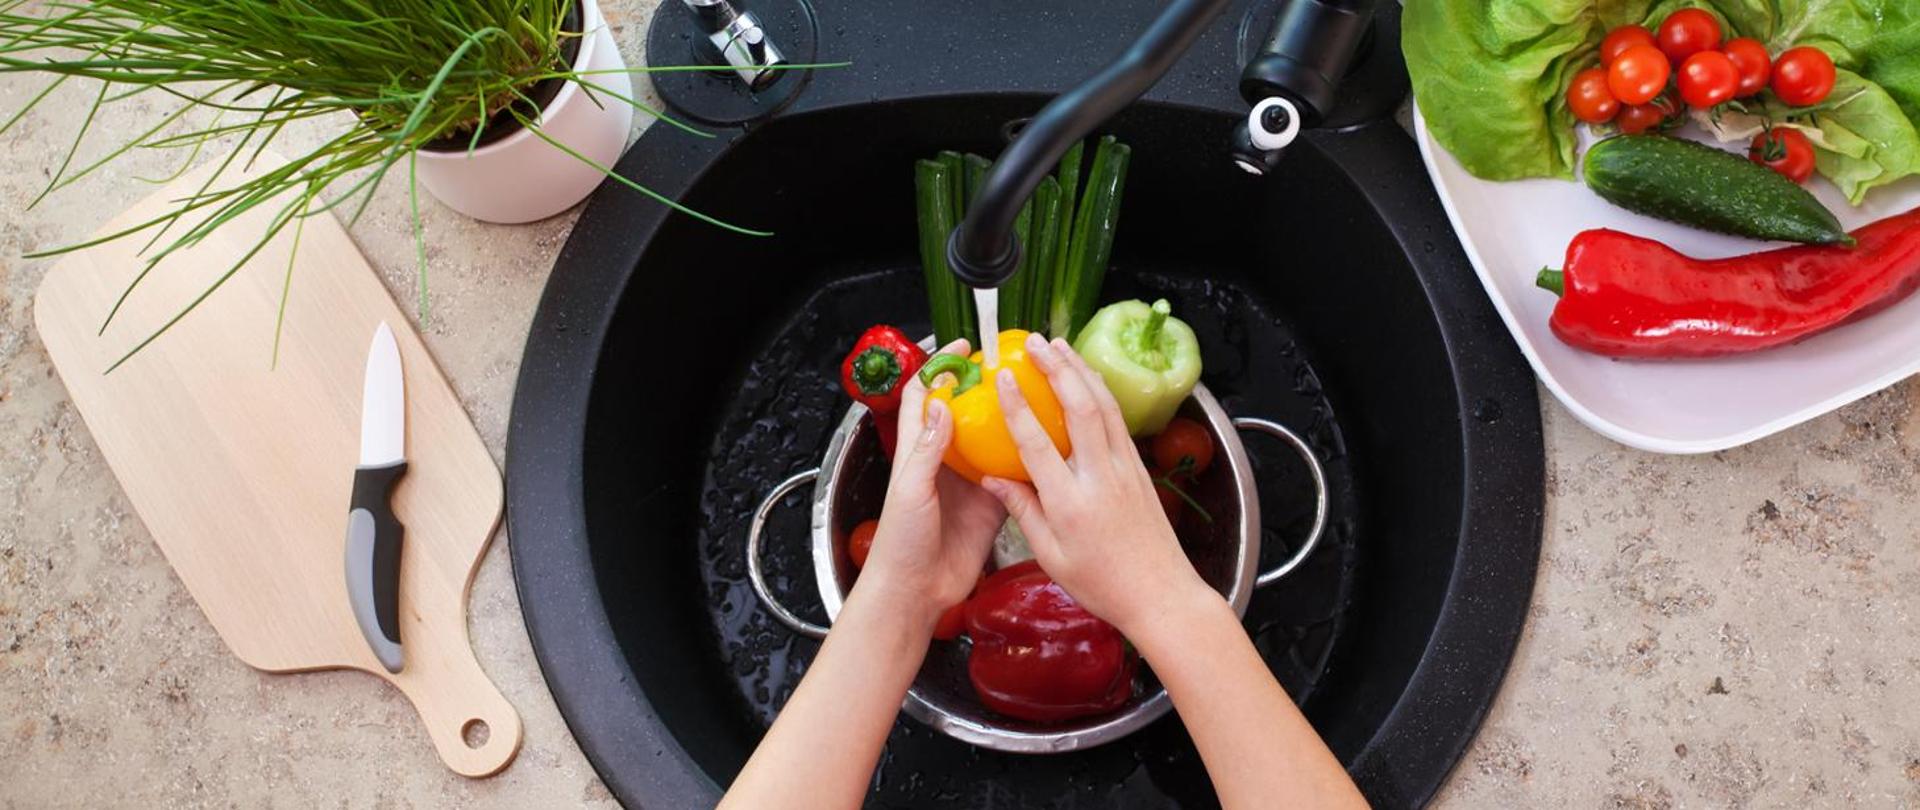 Dwie ręce myjące w zlewie papryki. Po lewej stronie widać deskę do krojenia i leżący na niej nóż. Po prawej stronie widać biały talerz z sałatą, pomidorkami, ogórkiem i czerwoną papryką